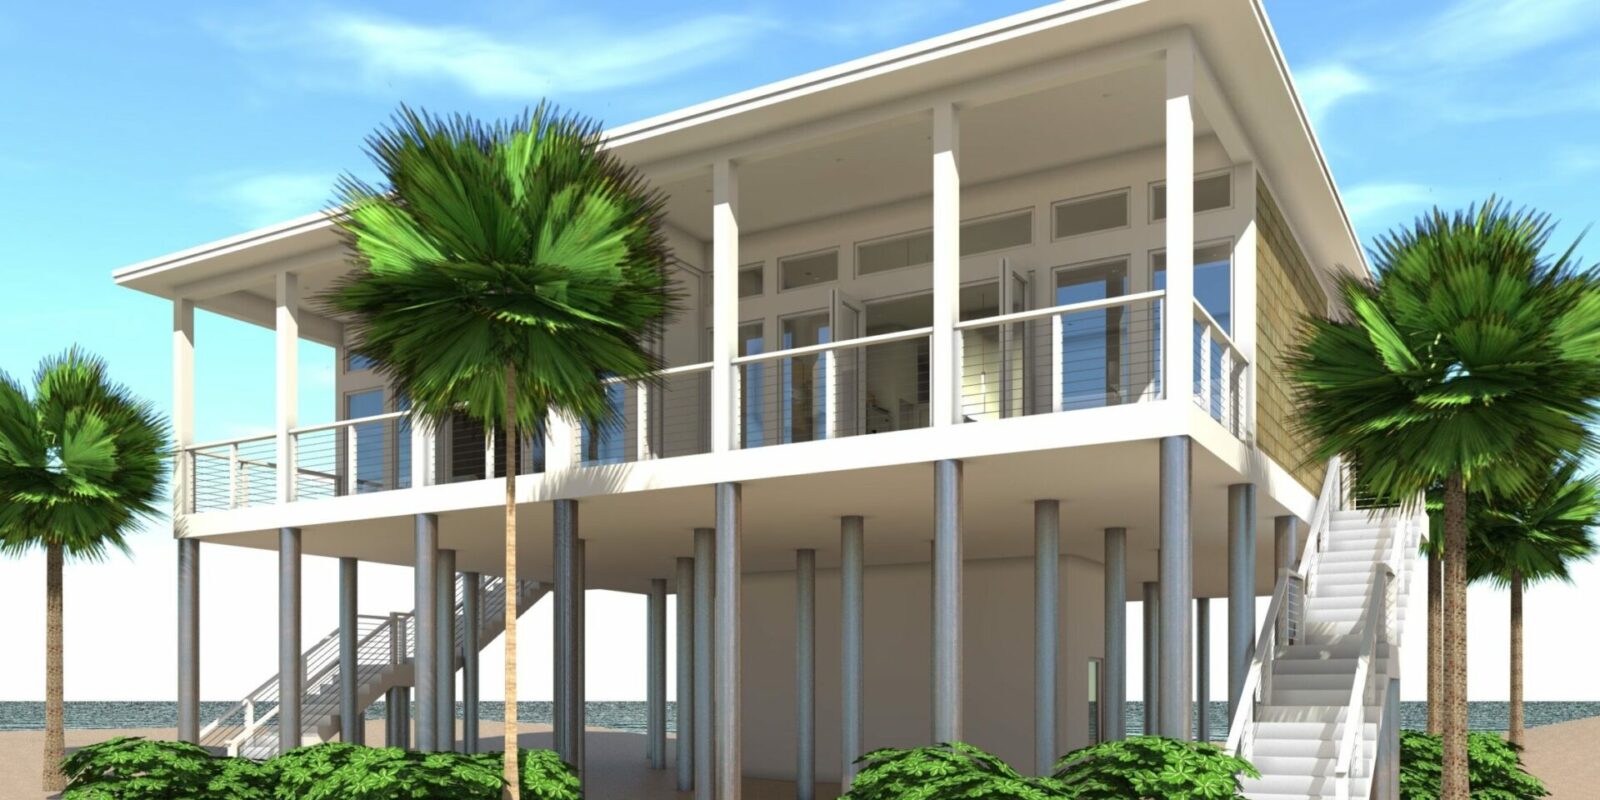 Sandcastle Duplex Plan - Tyree House Plans